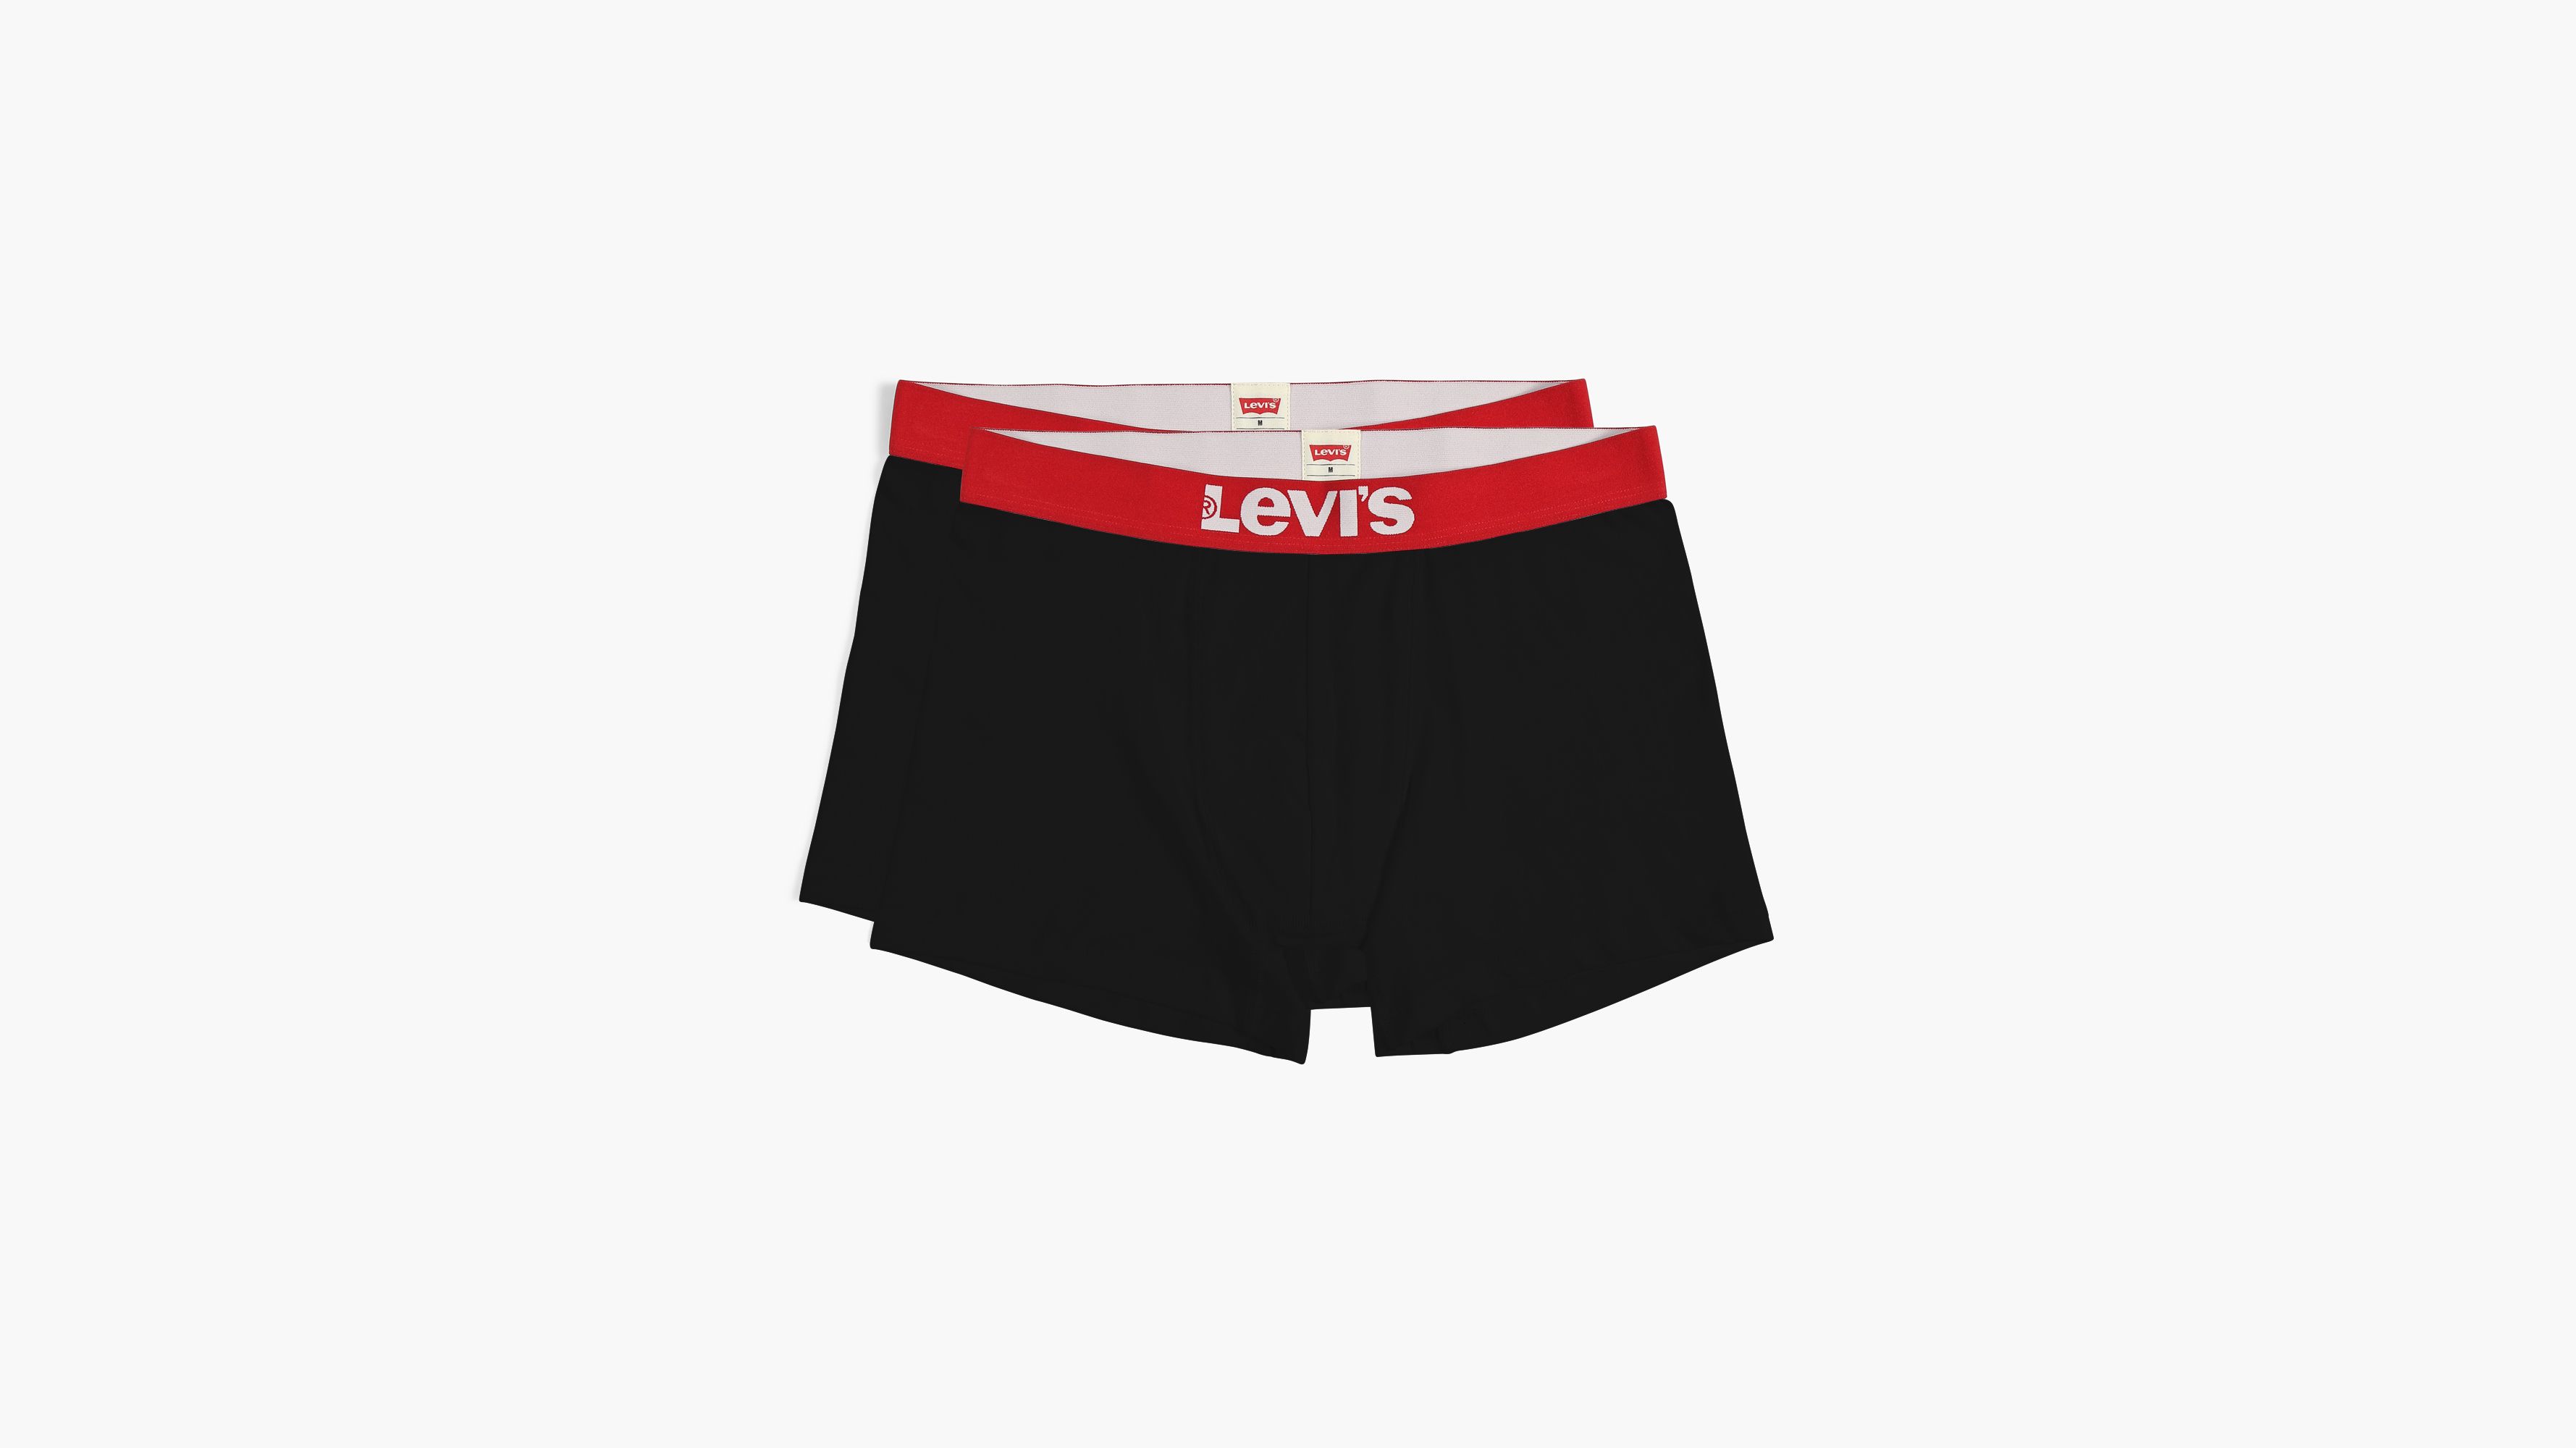 levis underwear near me